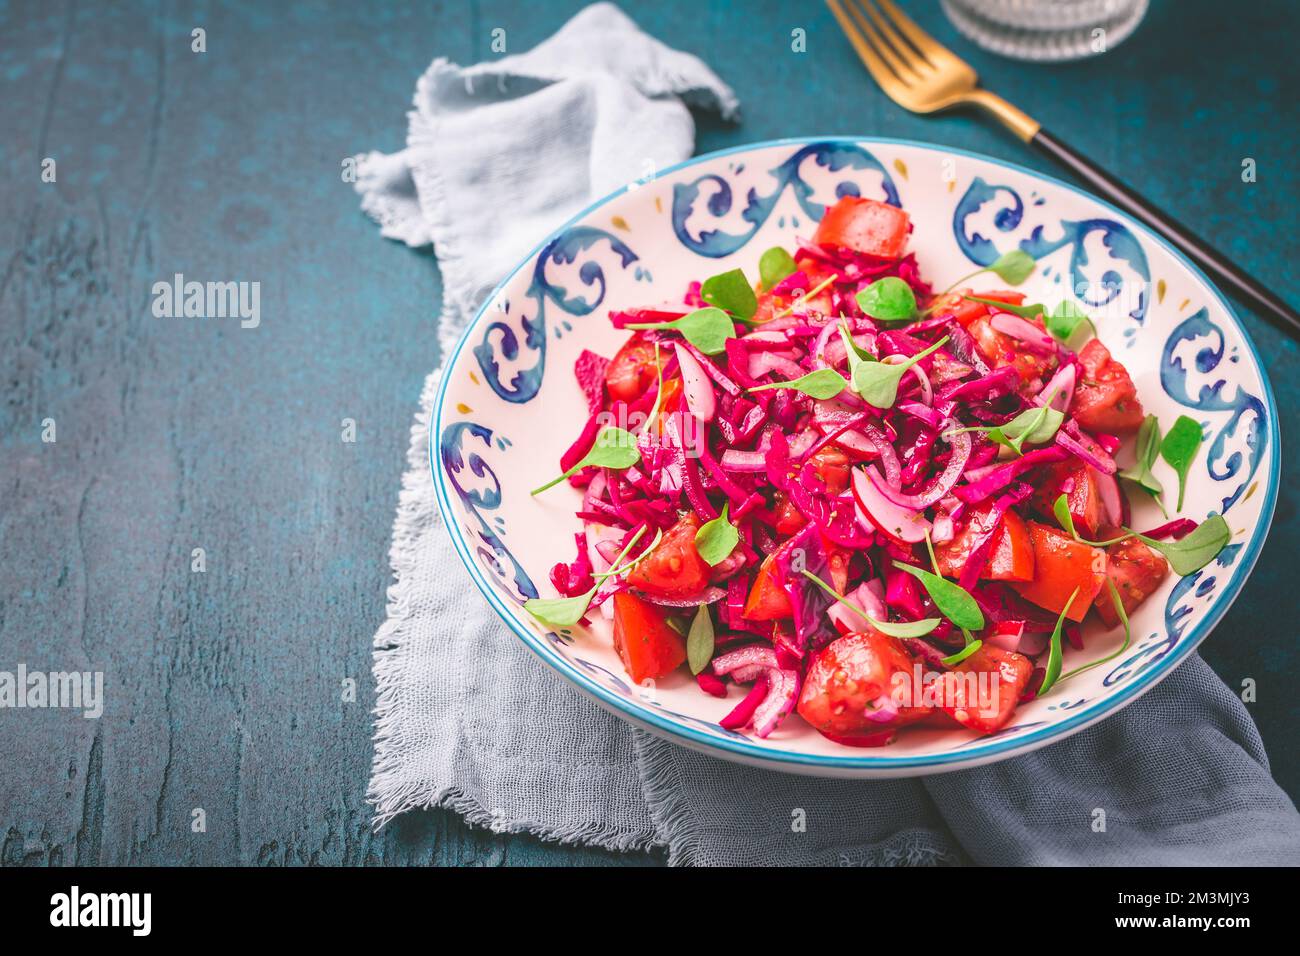 Wintersalat: Eingelegter Rotkohlsalat mit Rettich, Tomaten, Zwiebeln und Winterportulak. Vegetarisches gesundes Essen. Stockfoto